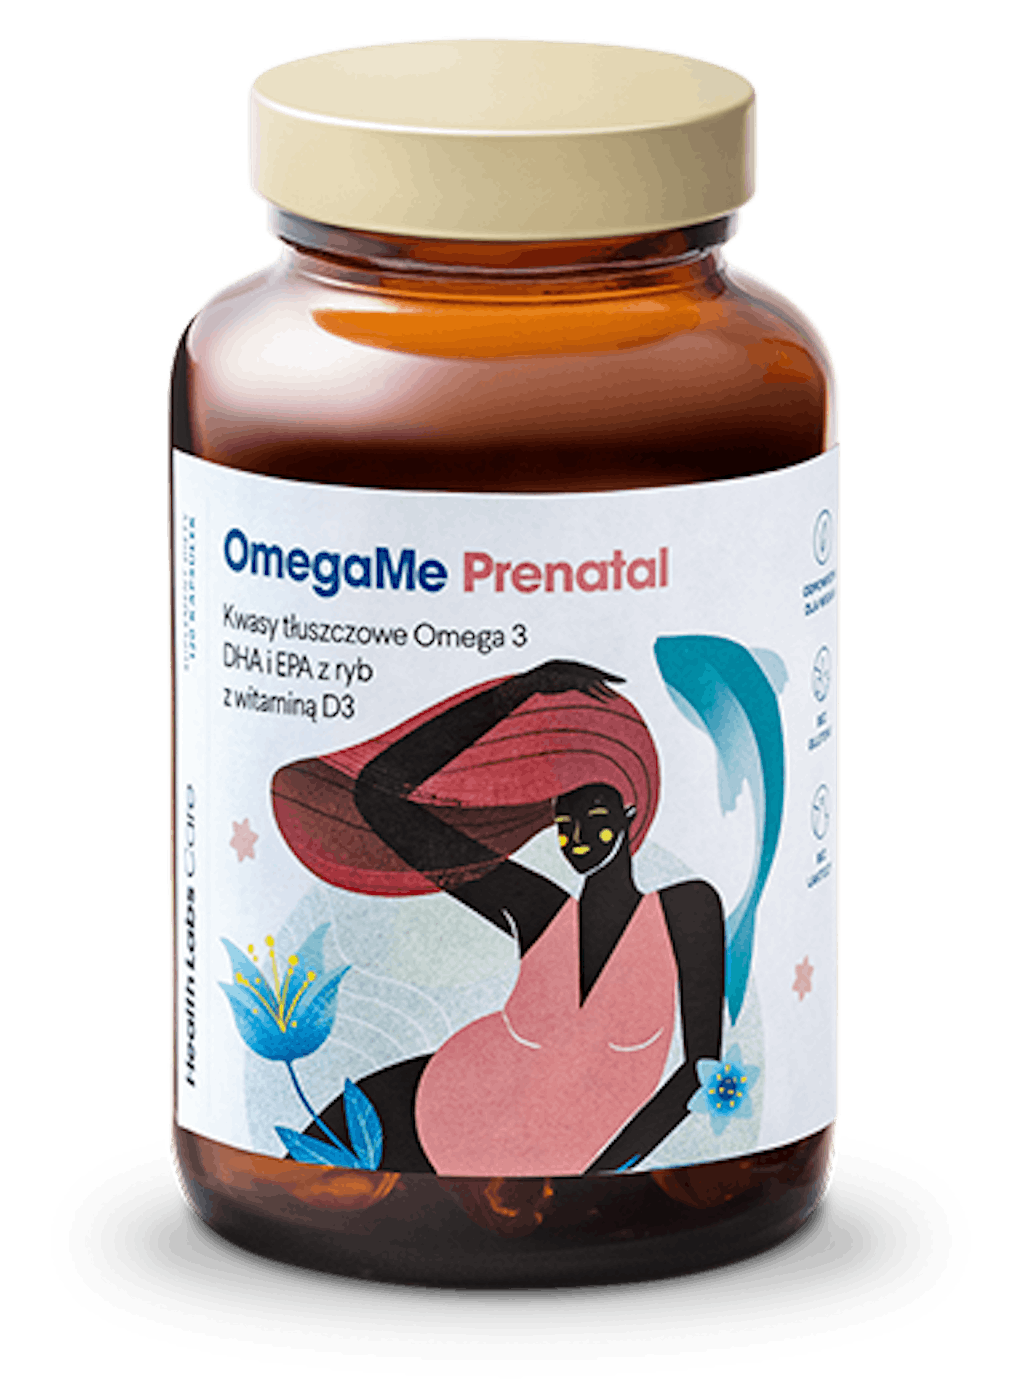 OmegaMe Prenatal